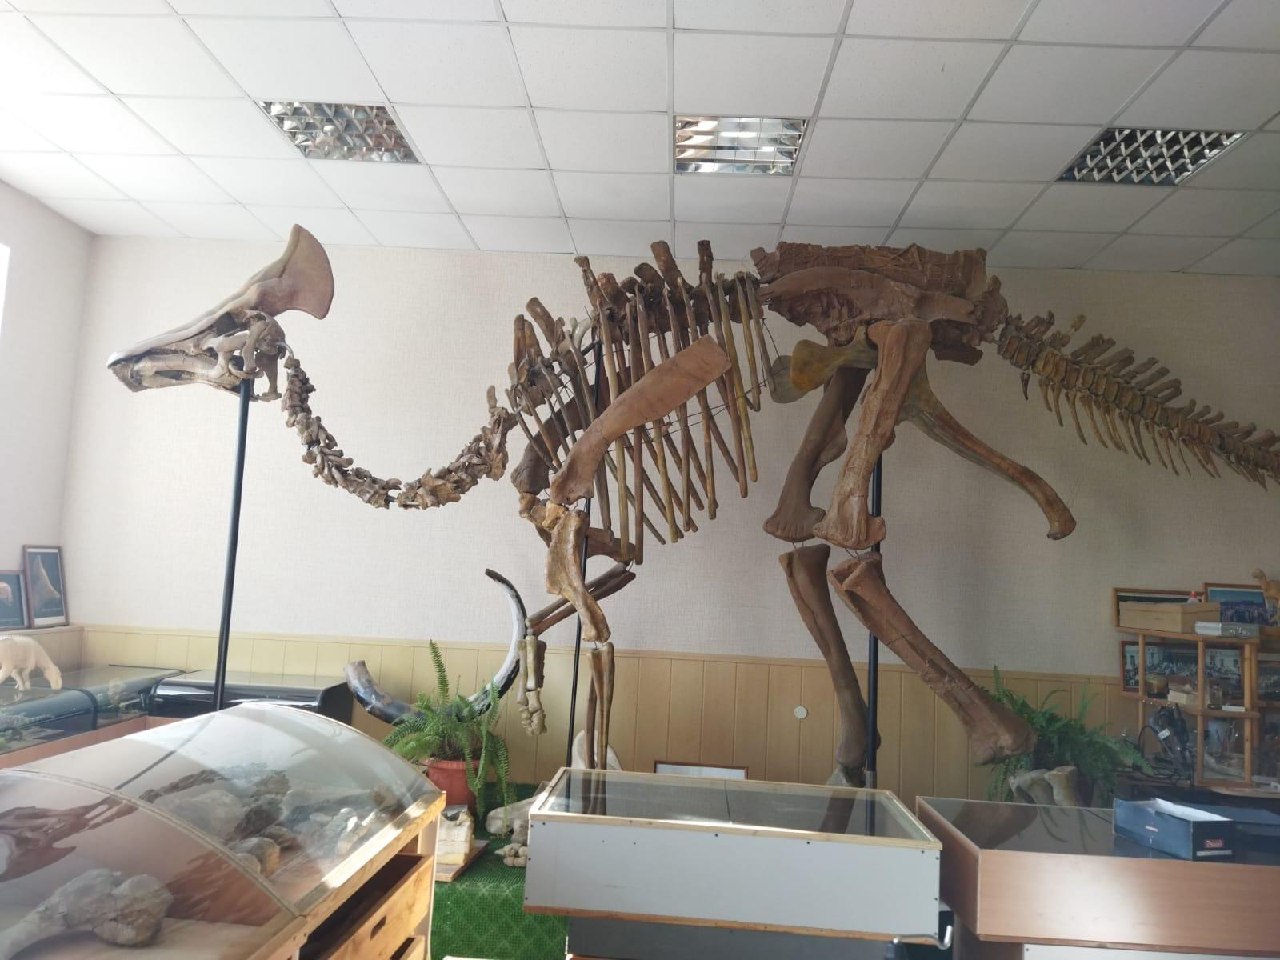  Кости динозавров из амурского института вошли в эксклюзивную виртуальную коллекцию